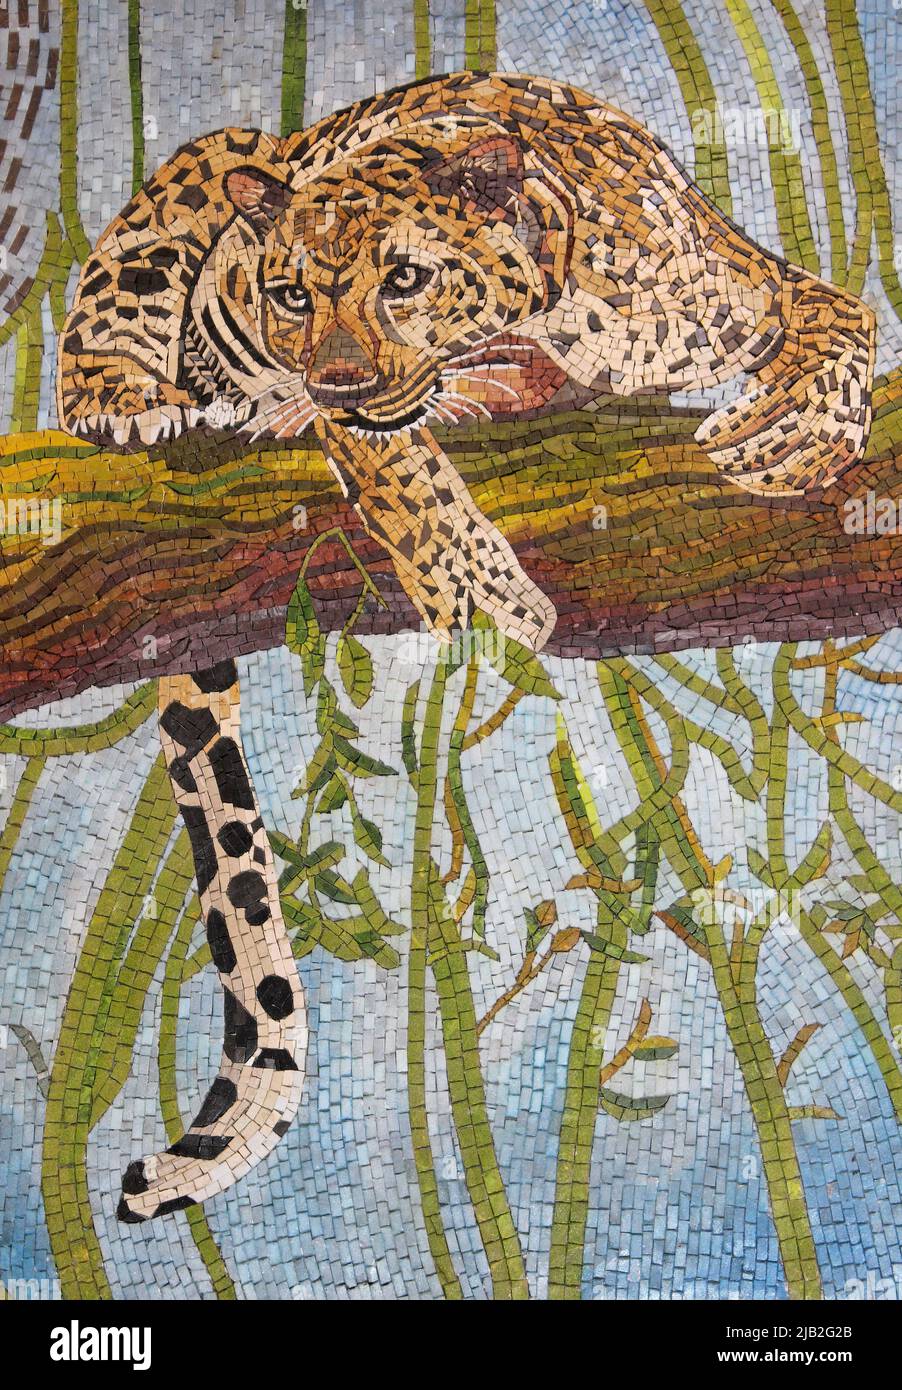 Léopard dans l'arbre - mosaïque d'art Banque D'Images